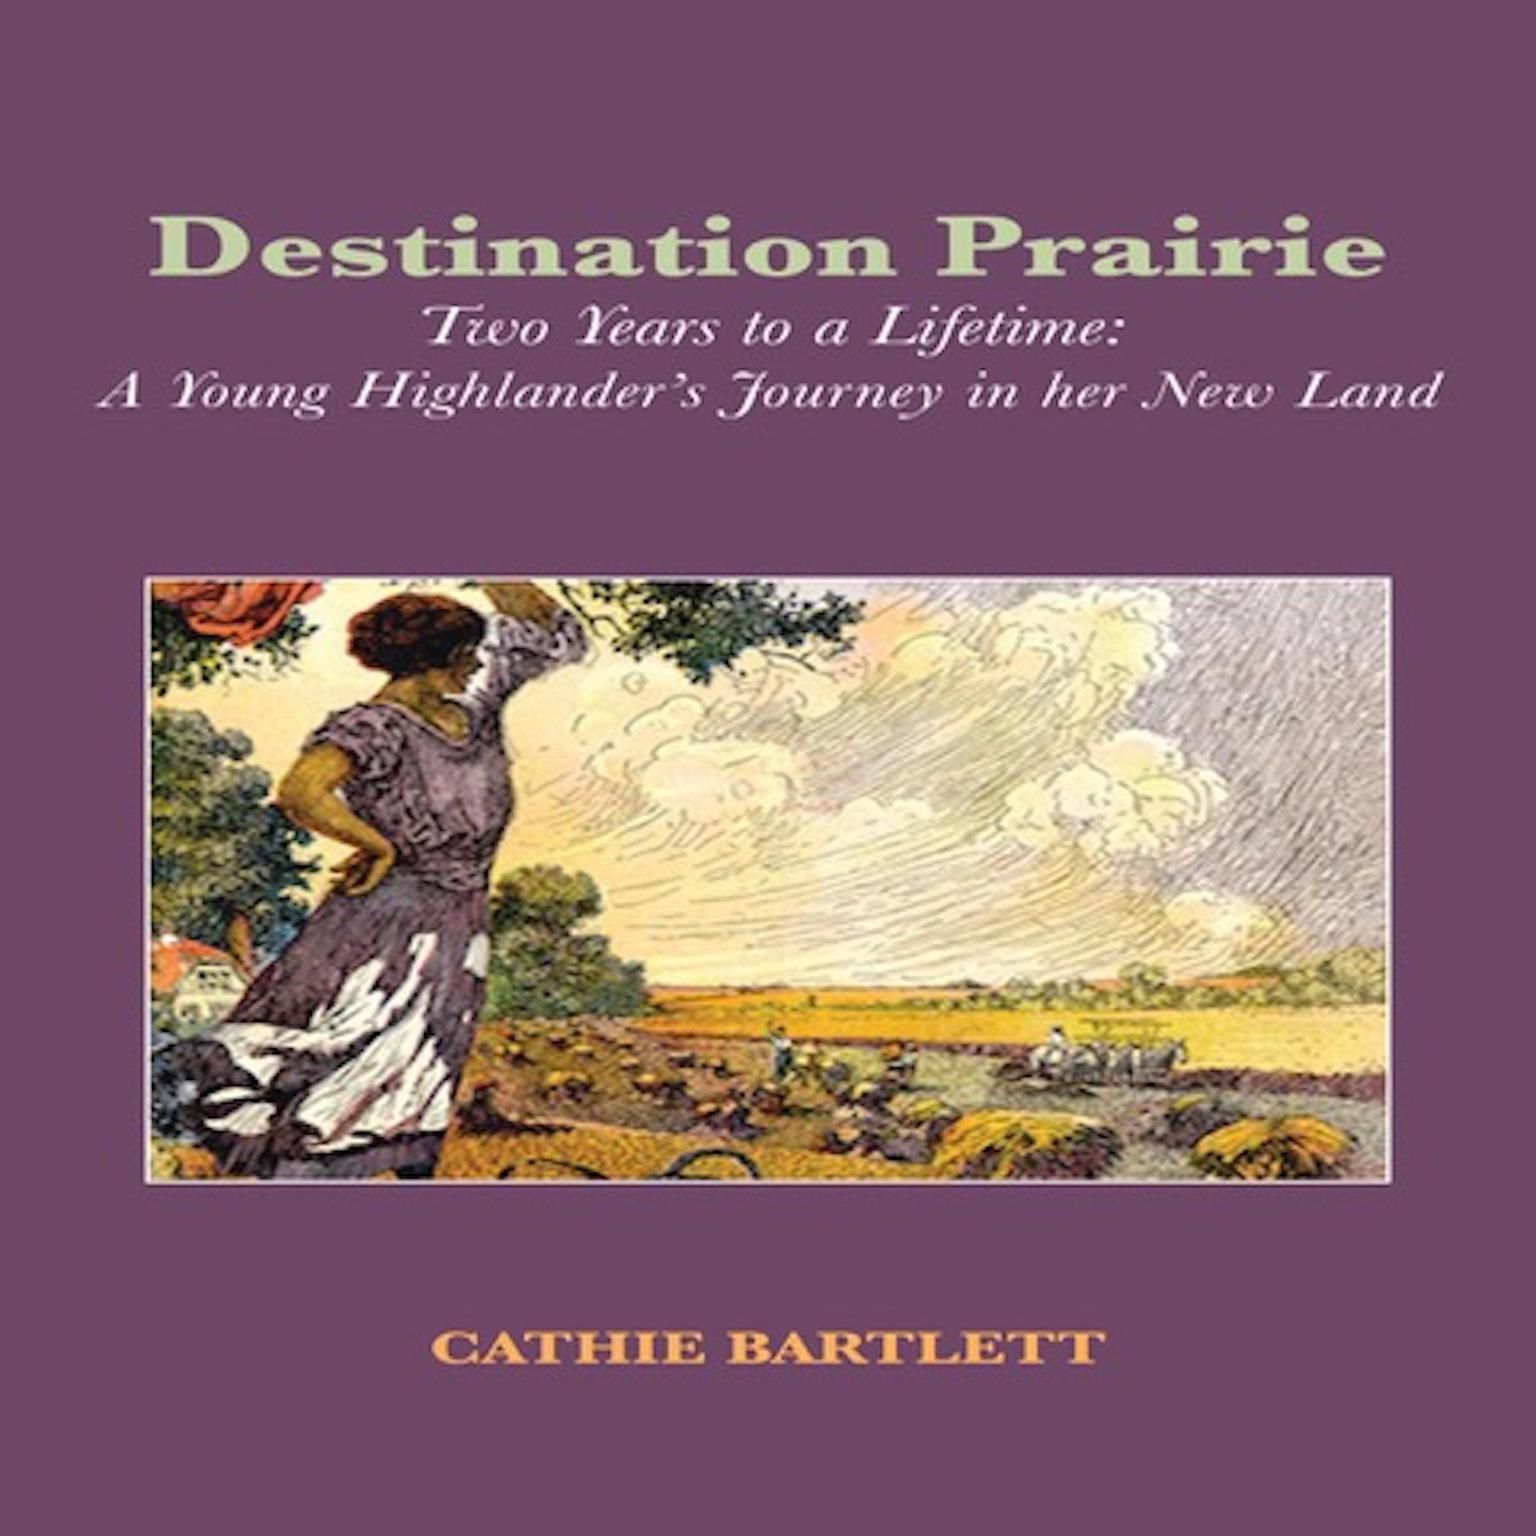 Destination Prairie Audiobook, by Cathie Bartlett